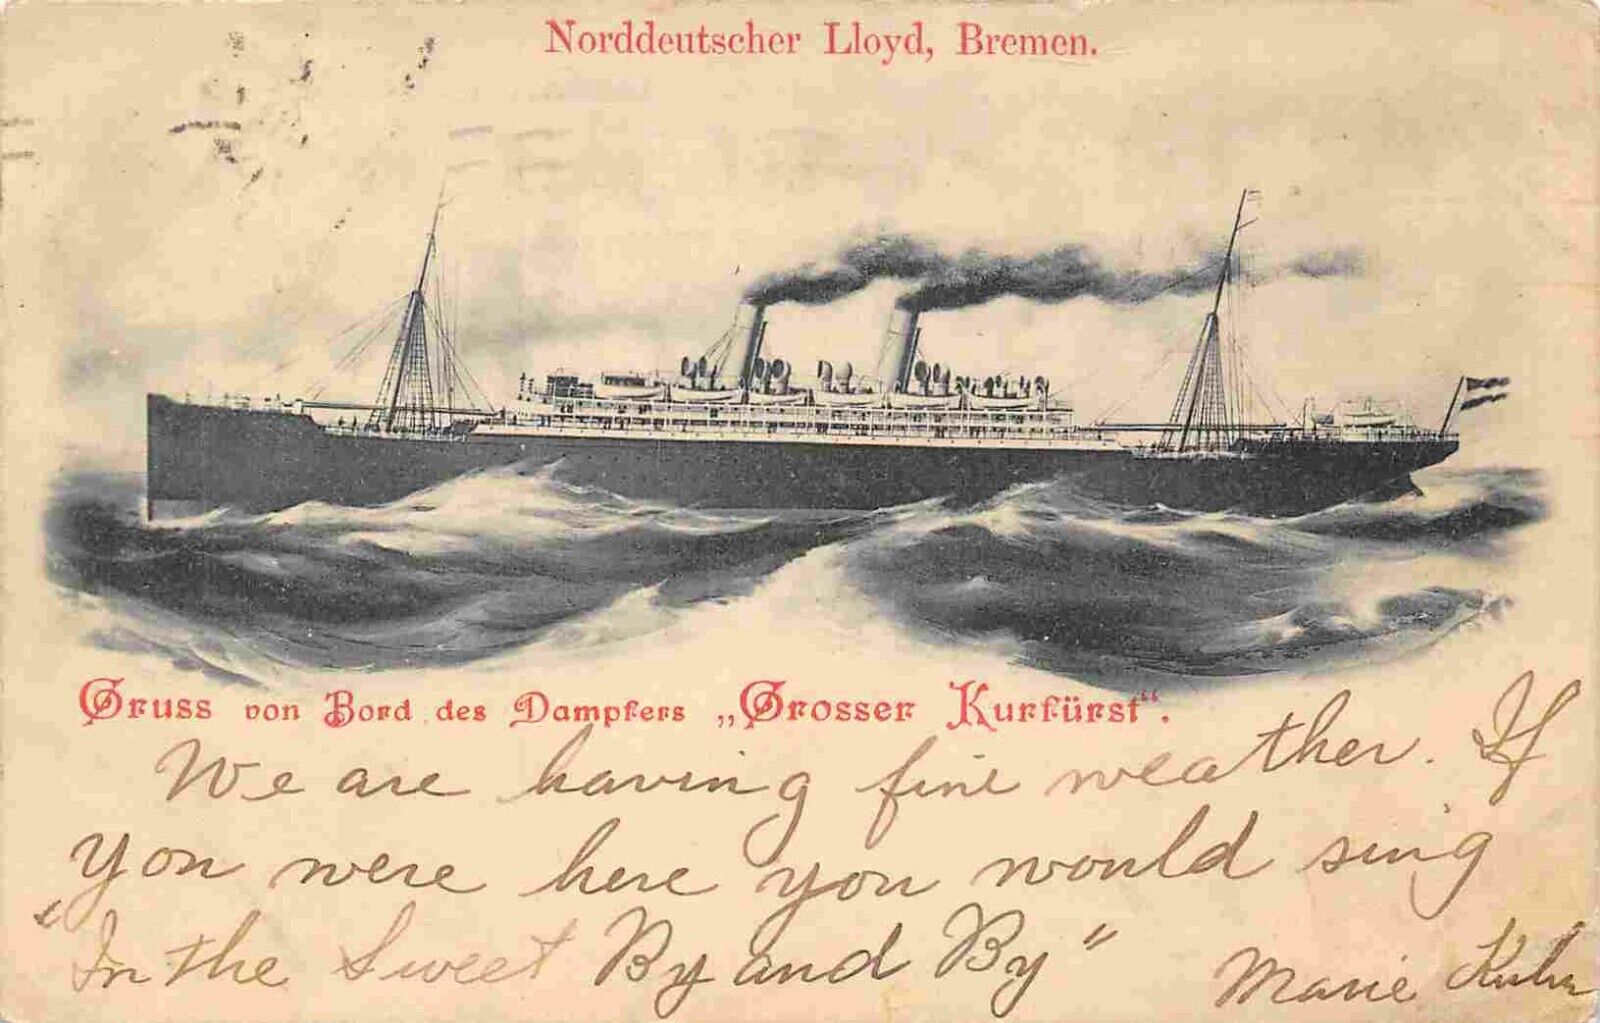 Grosser Kurfurst Steamer Norddeutscher Lloyd Bremen Germany 1903 postcard